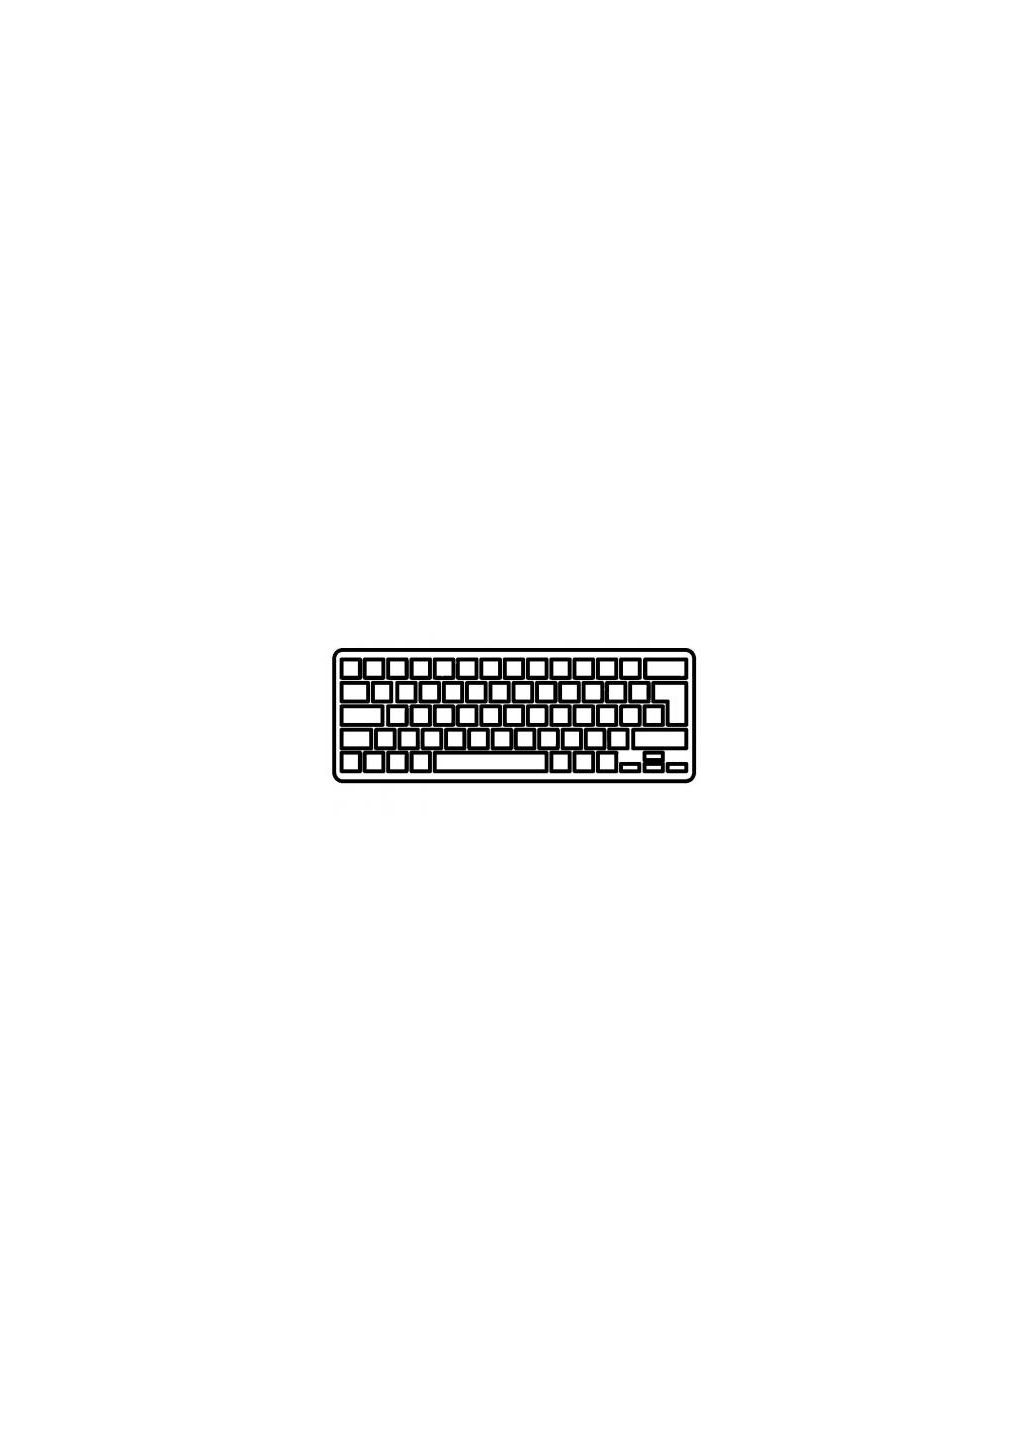 Клавиатура ноутбука (A43409) Lenovo ideapad z450/z460 series черная с серой рамкой ua (276707029)